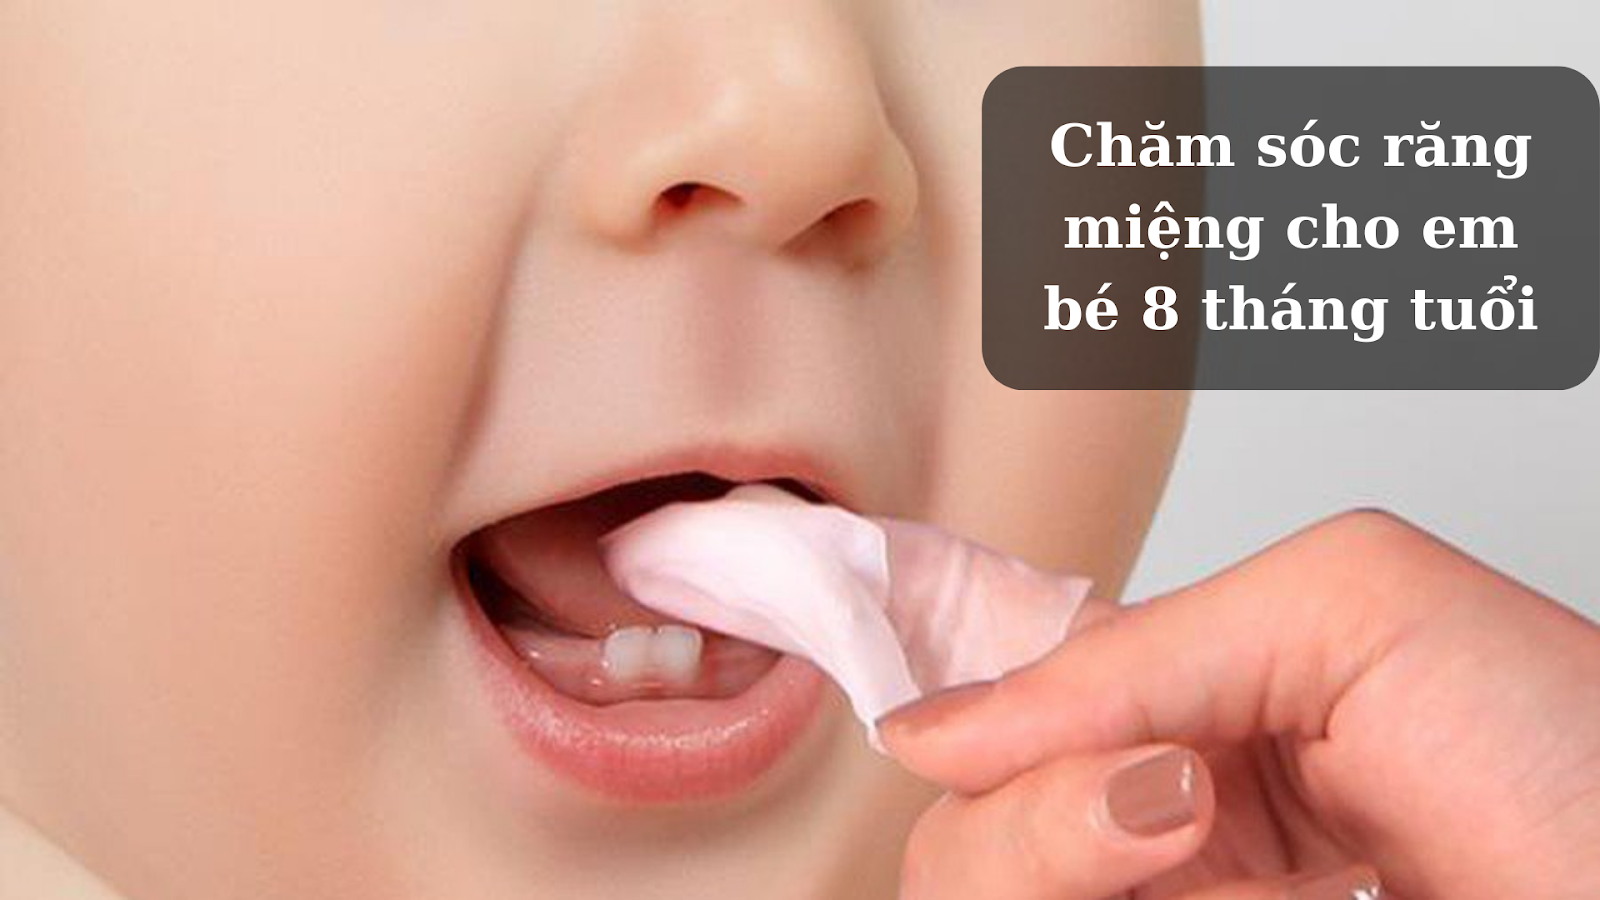 Chăm sóc răng miệng cho em bé 8 tháng tuổi